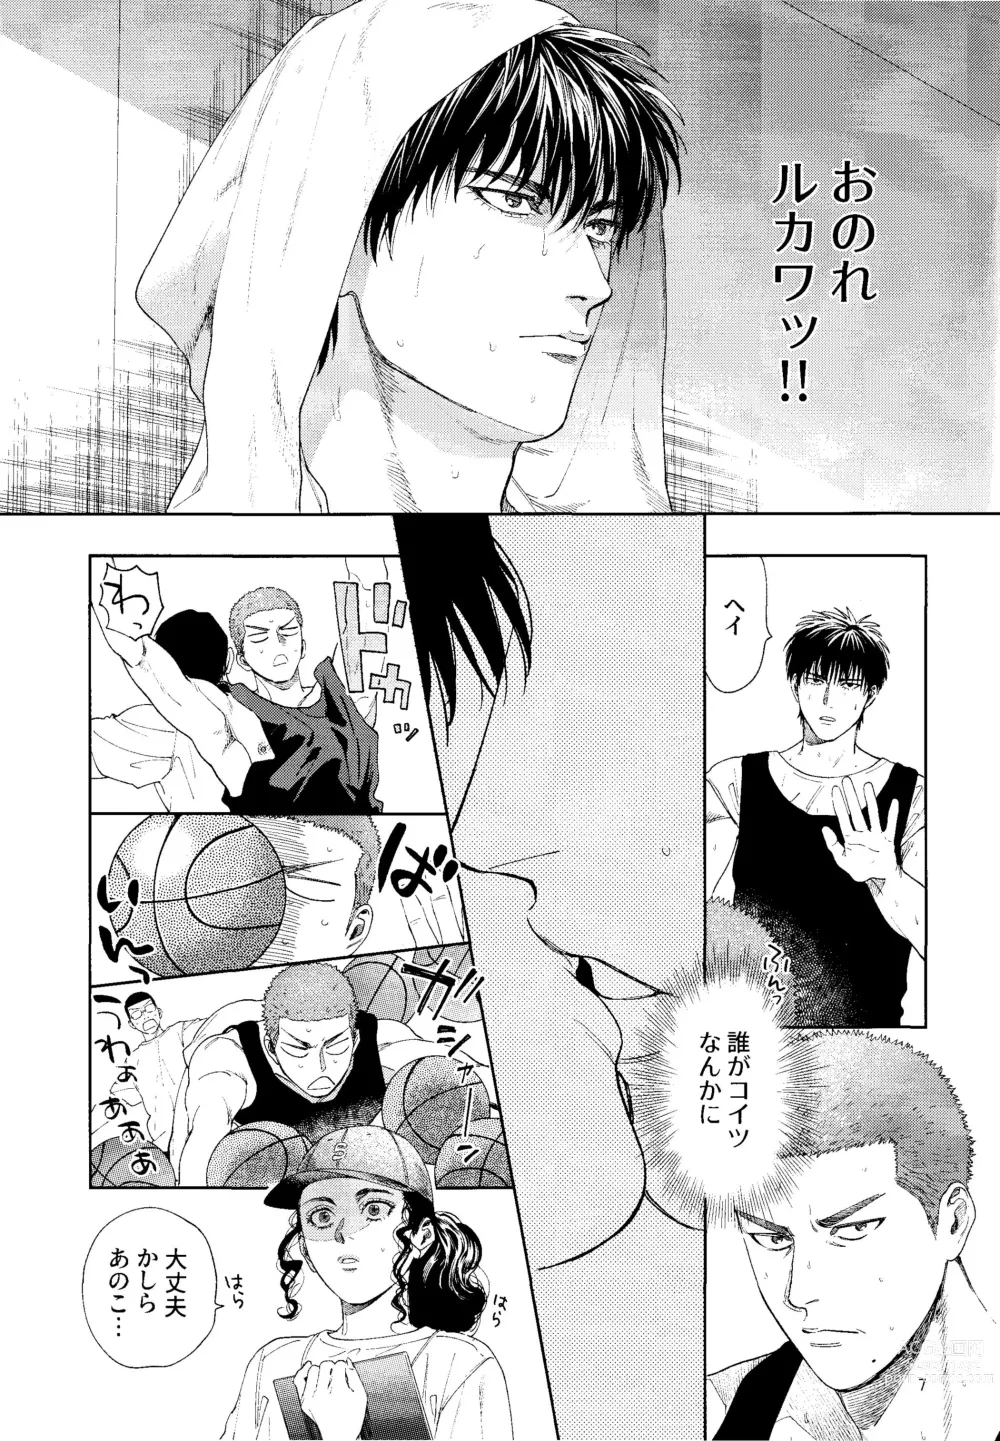 Page 6 of doujinshi Doahou ni Kiss